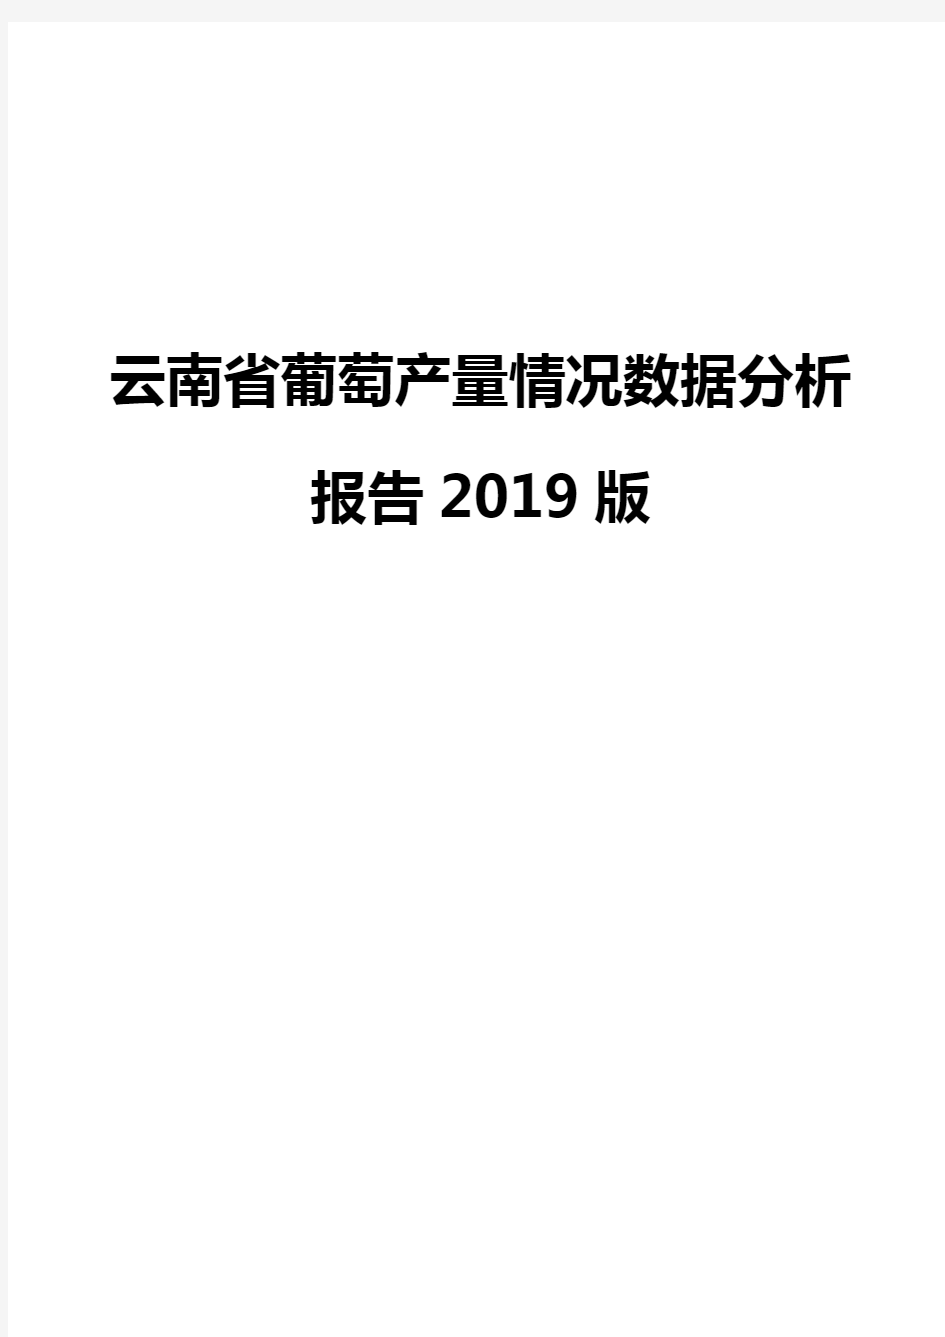 云南省葡萄产量情况数据分析报告2019版